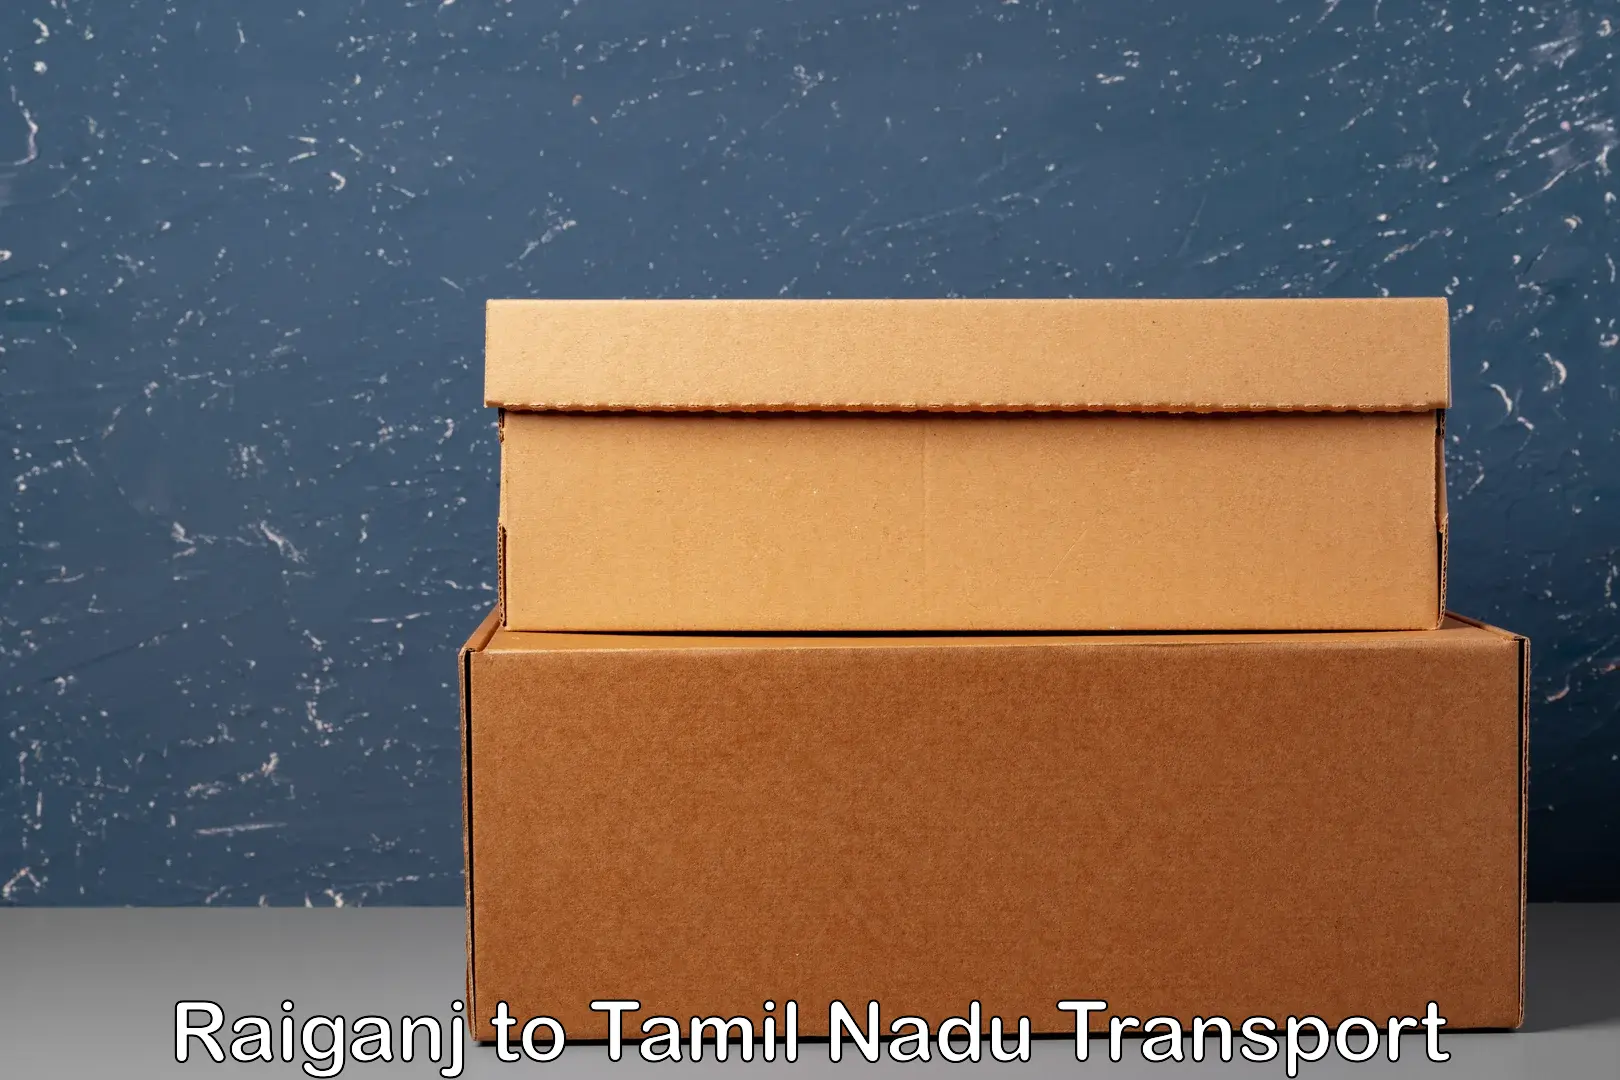 Online transport booking Raiganj to Tamil Nadu